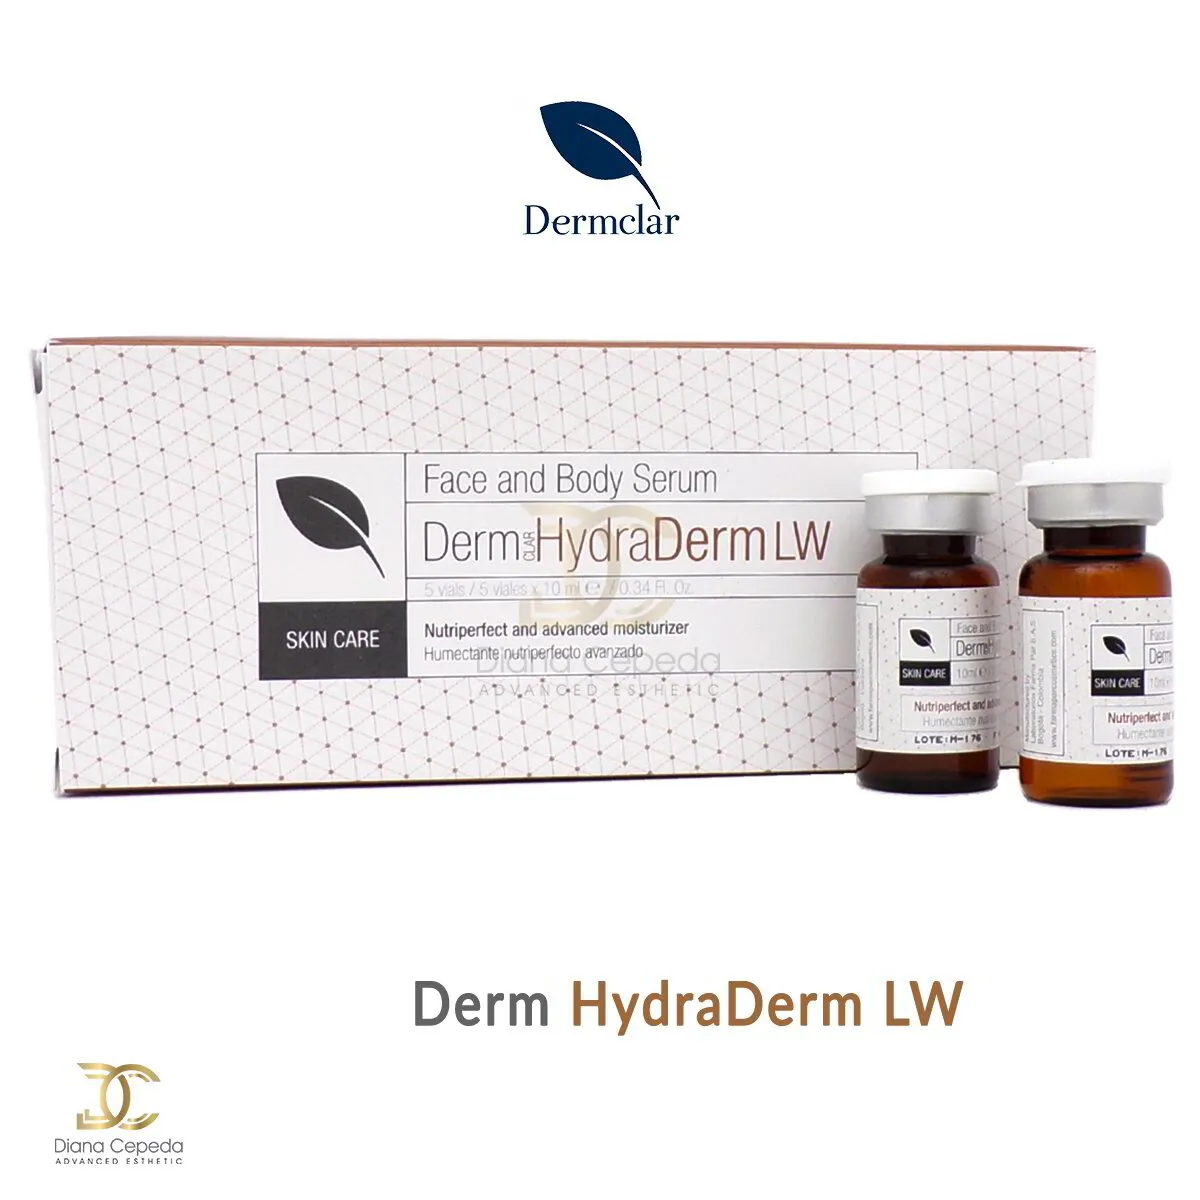 Derm HydraDerm LW